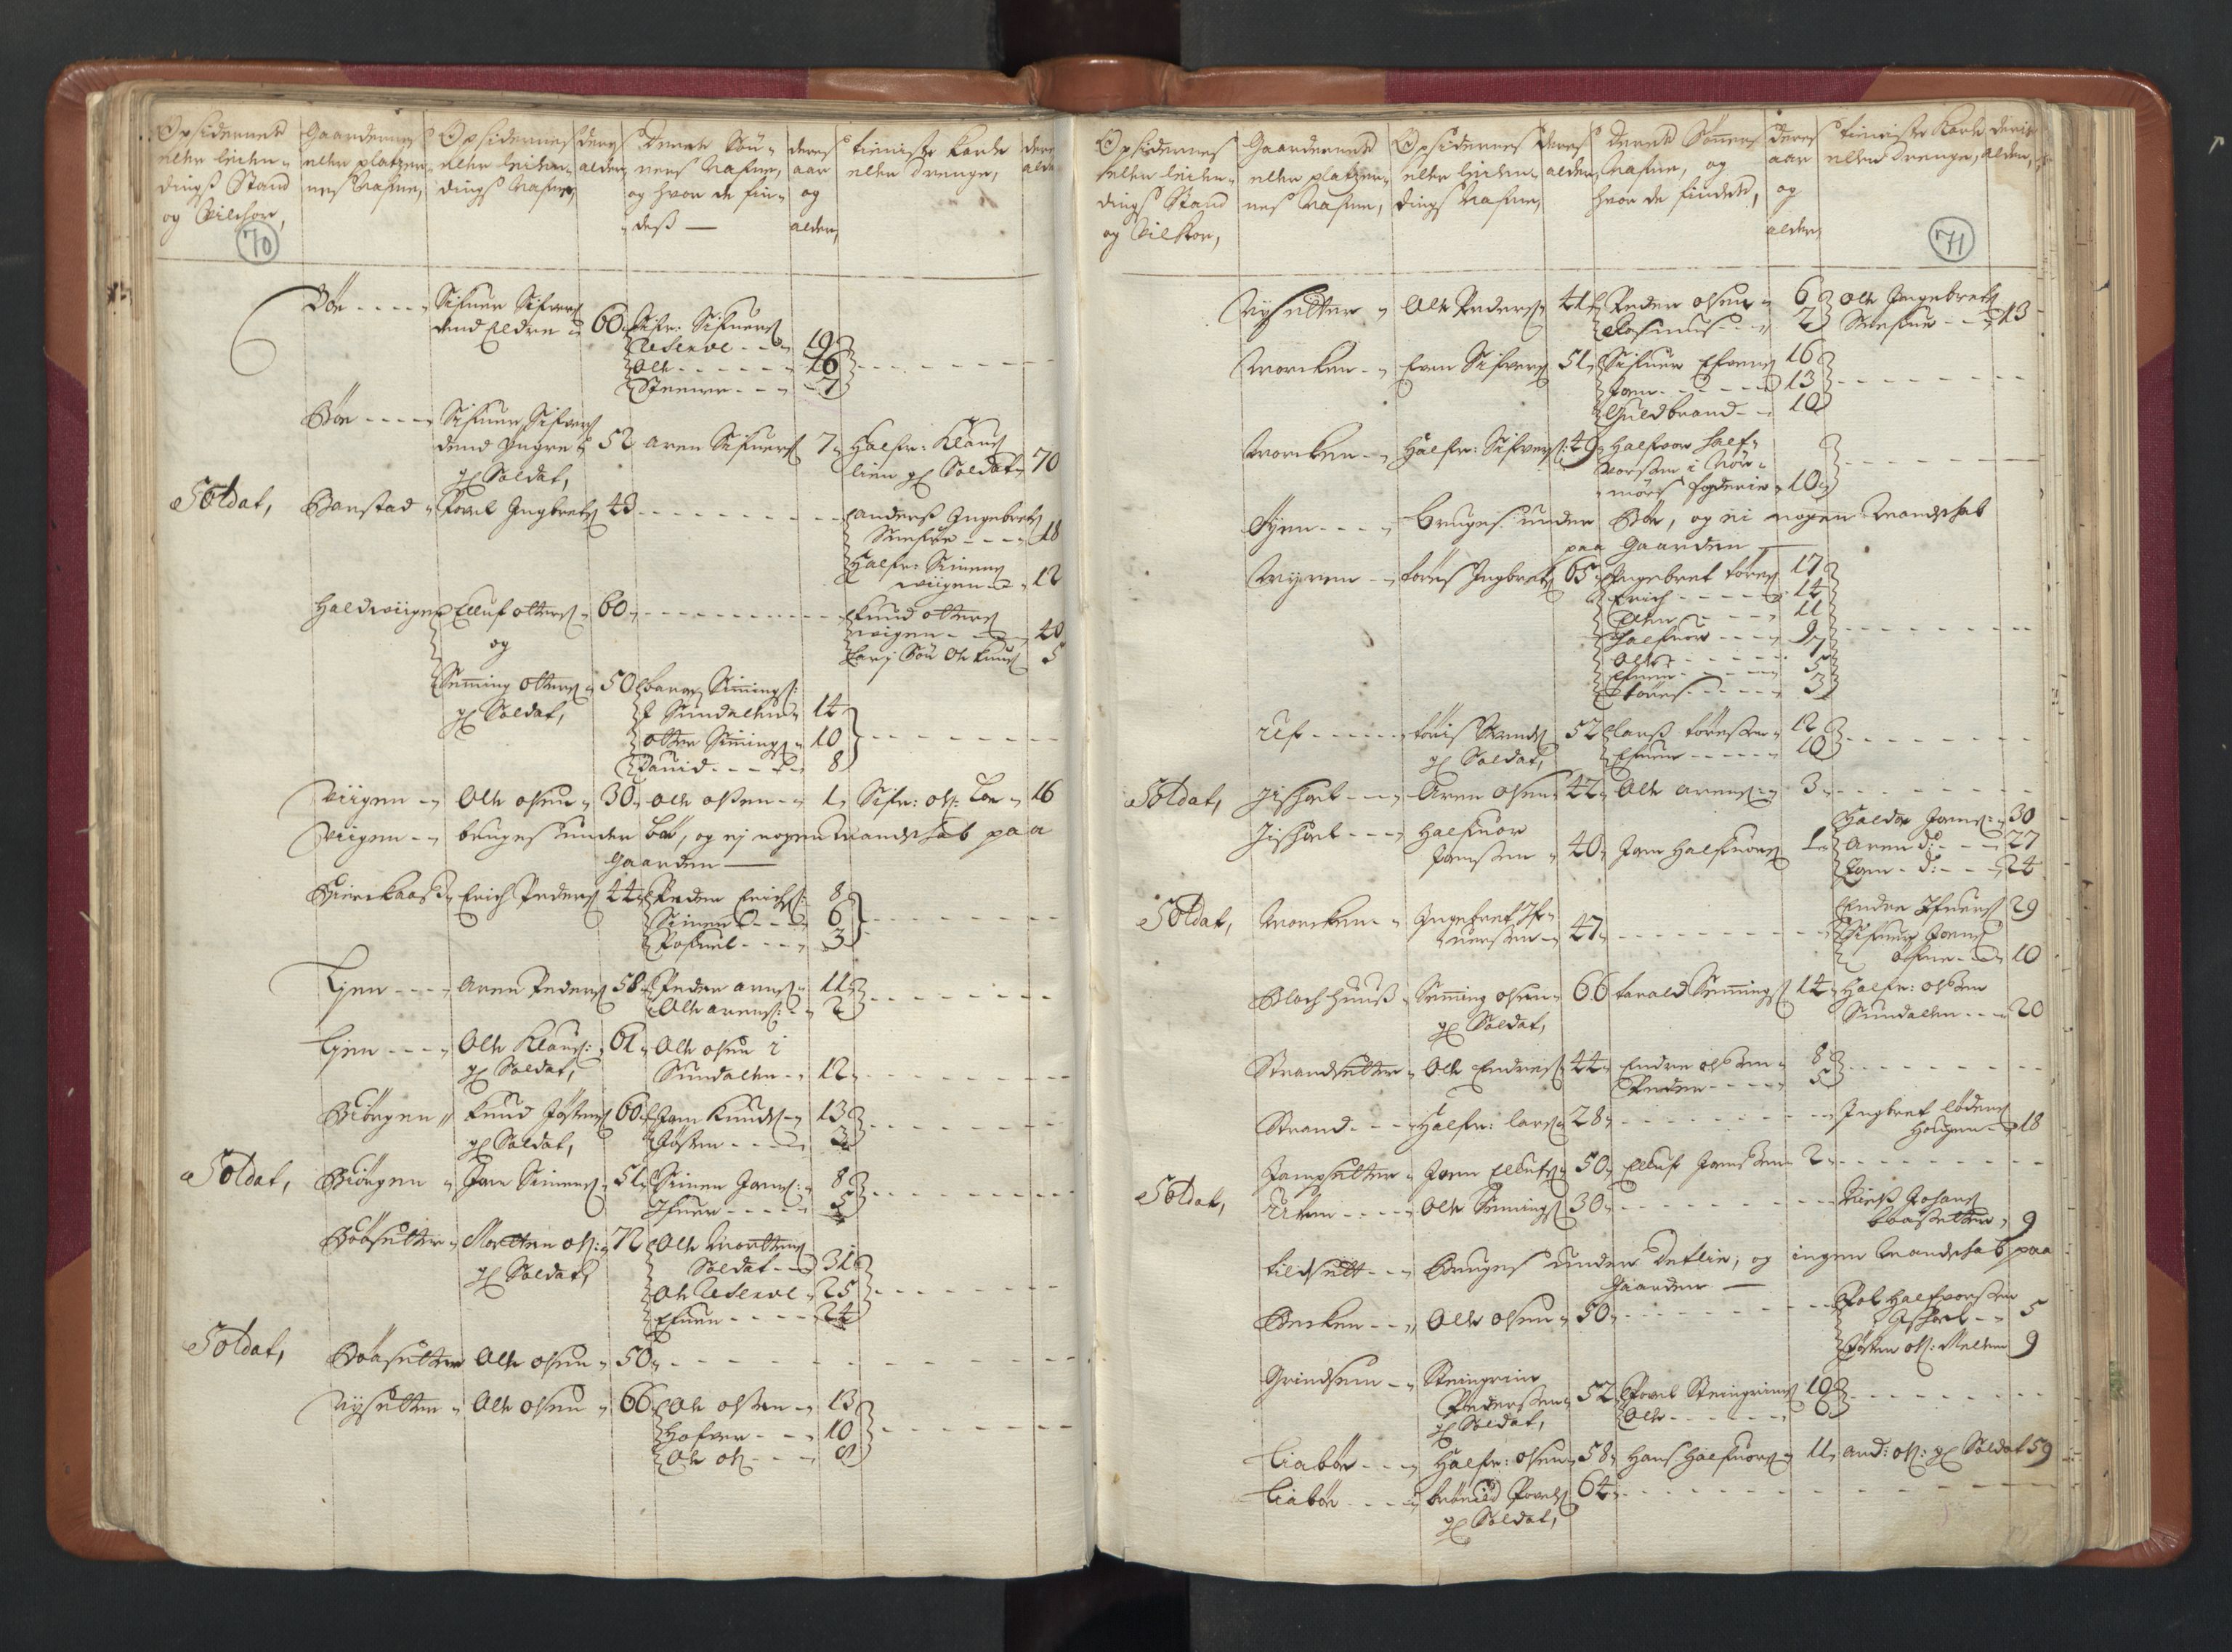 RA, Manntallet 1701, nr. 13: Orkdal fogderi og Gauldal fogderi med Røros kobberverk, 1701, s. 70-71